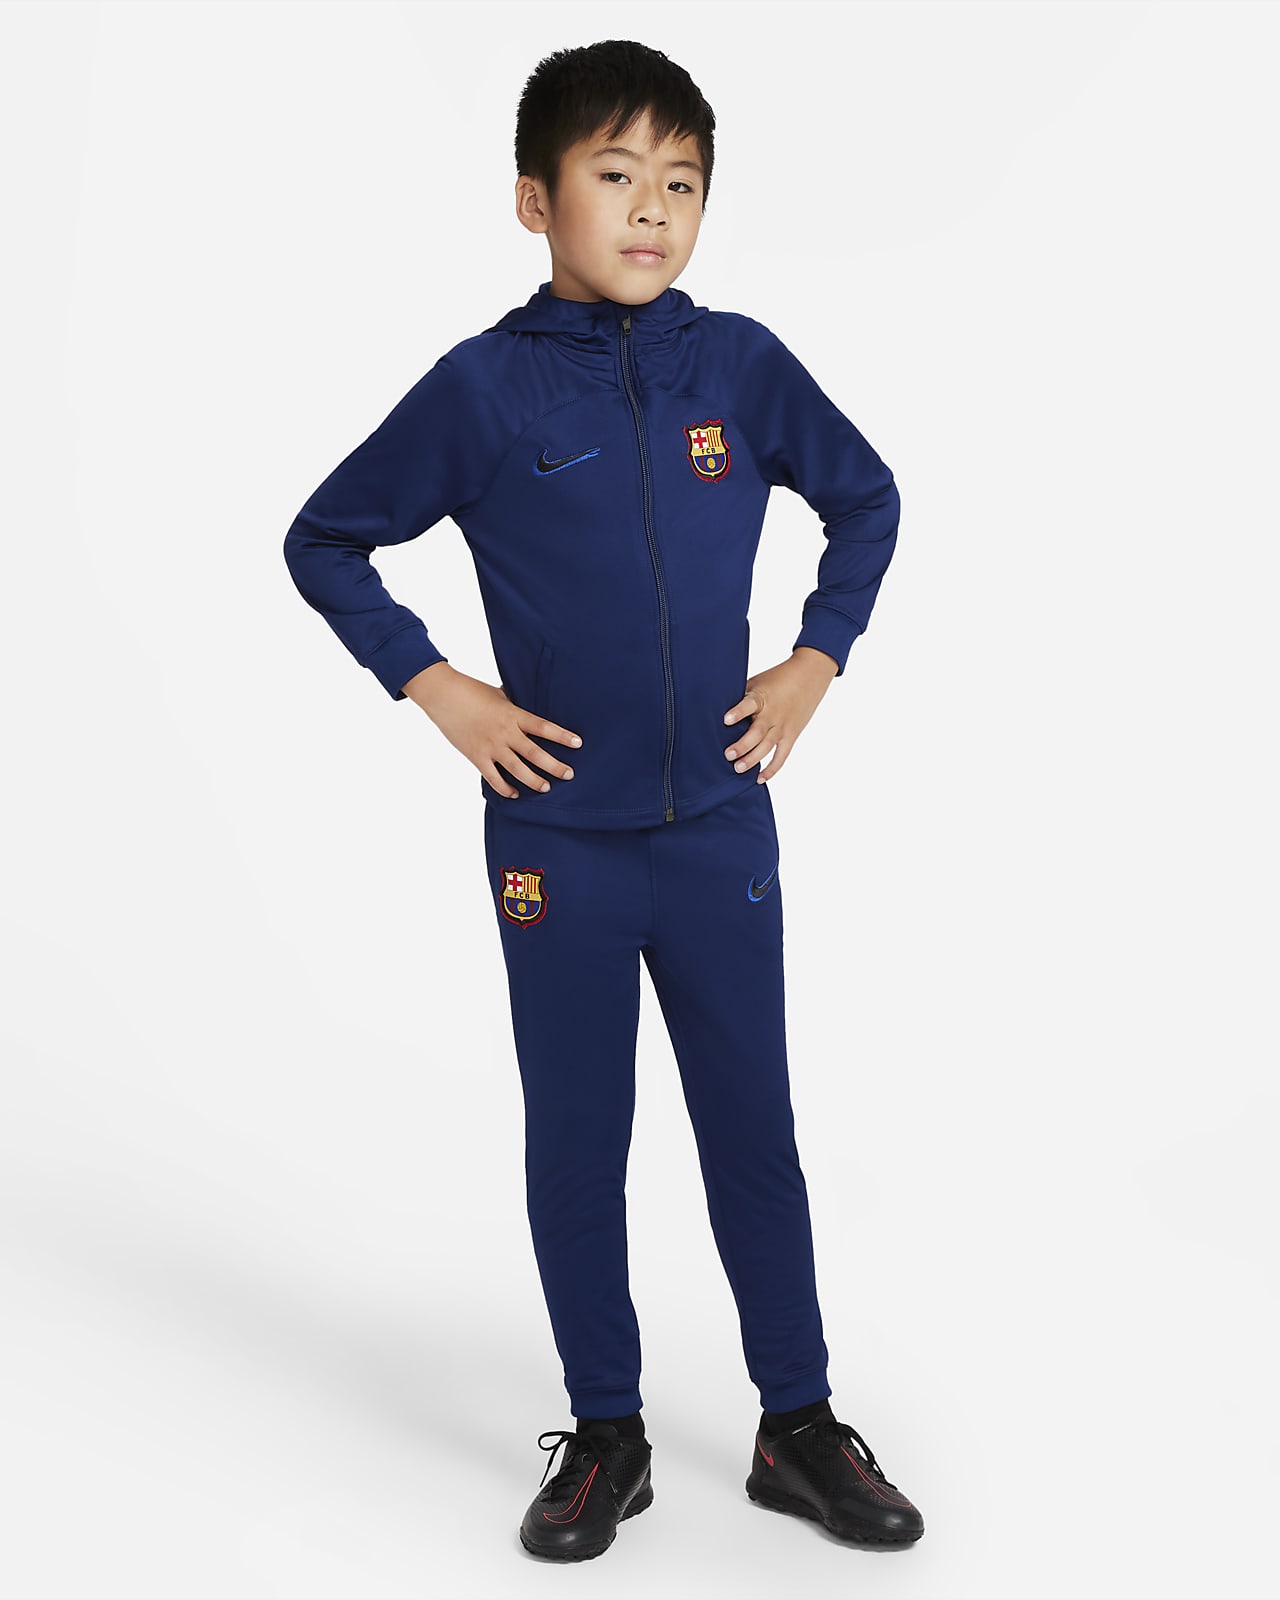 Pleteninová fotbalová sportovní souprava Nike Dri-FIT FC Barcelona Strike pro malé děti